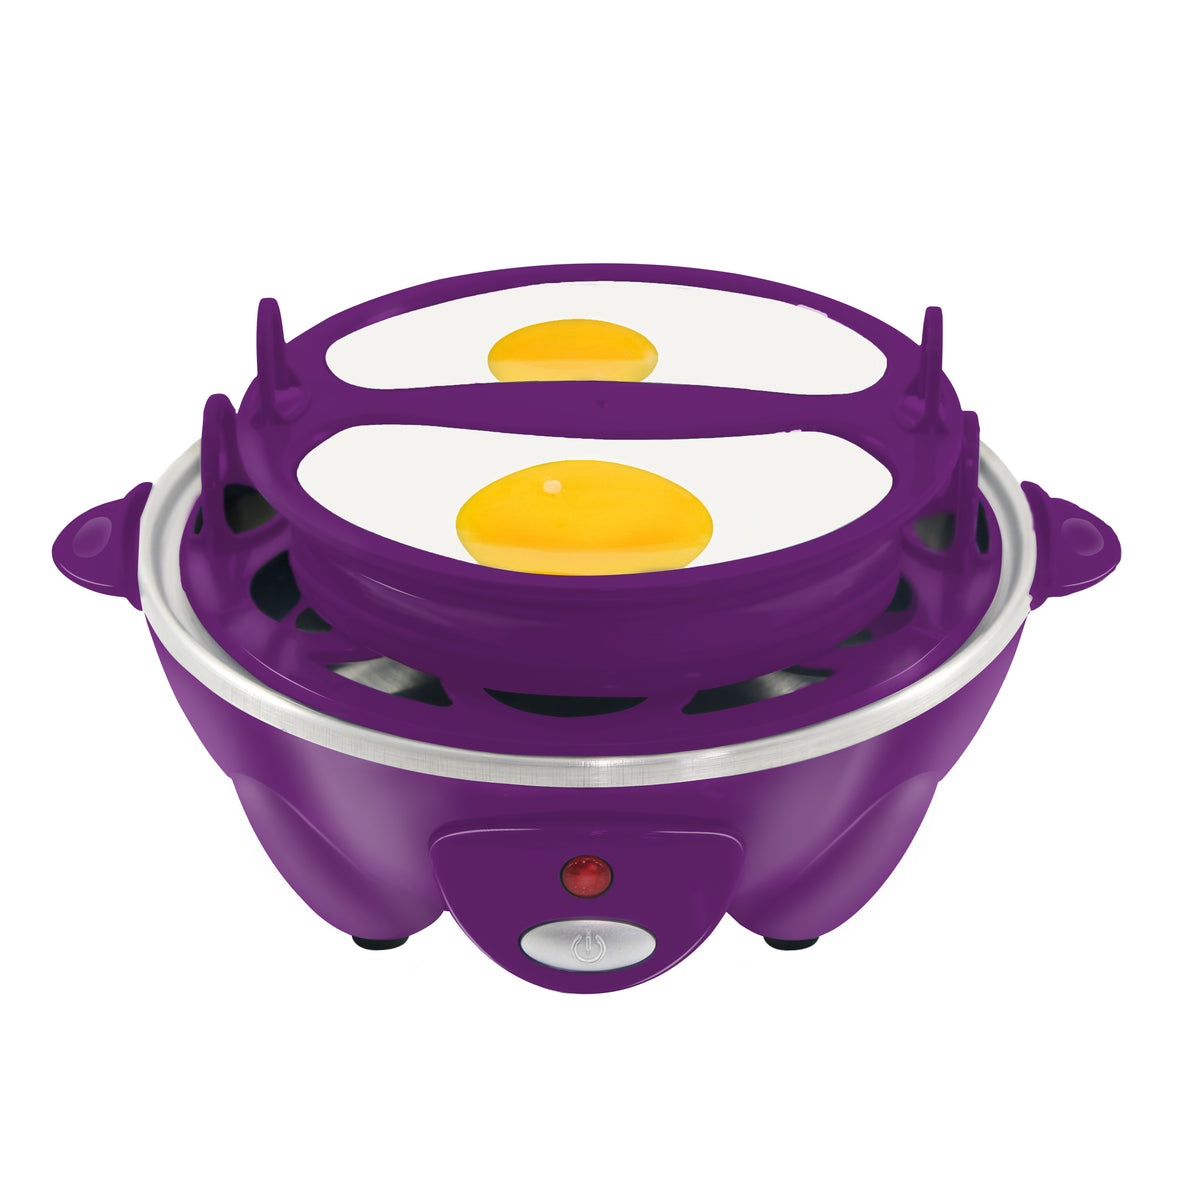 Kitcheniva Electric Egg Cooker Steamer 7 Eggs, 1 Pcs - Food 4 Less